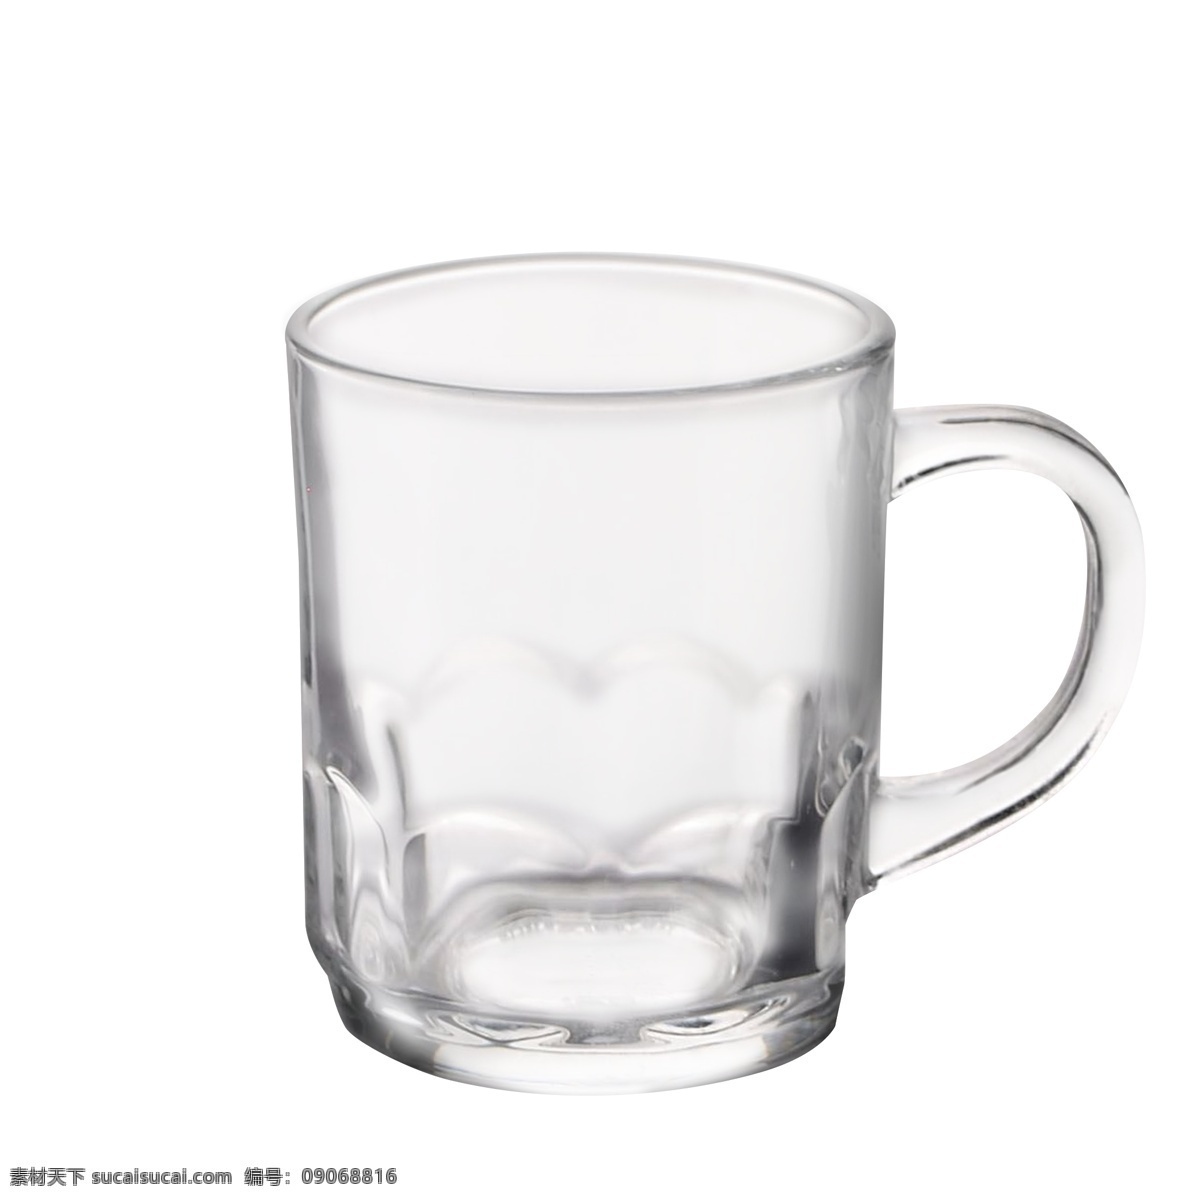 酒杯 实物 啤酒杯 玻璃 酒杯实物 玻璃酒杯 带手柄 大平底酒杯 透明玻璃杯 调酒杯 大玻璃杯